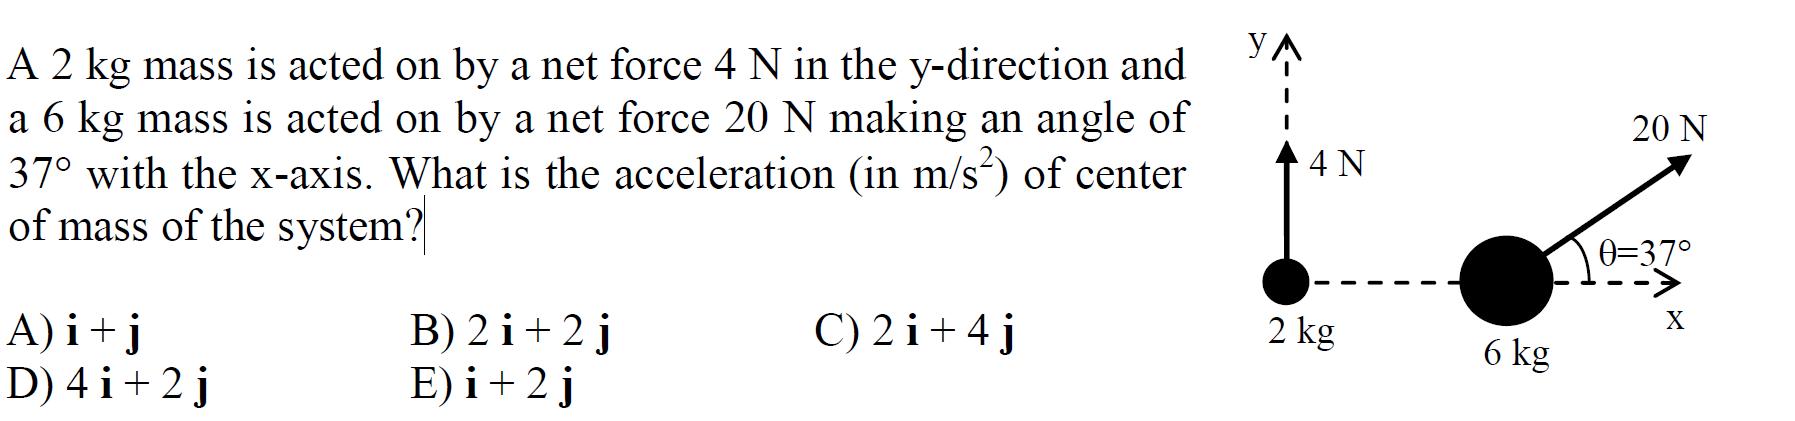 A 2 kg mass is acted on by a net force 4 N in the y-direction and a 6 kg mass is acted on by a net force 20 N